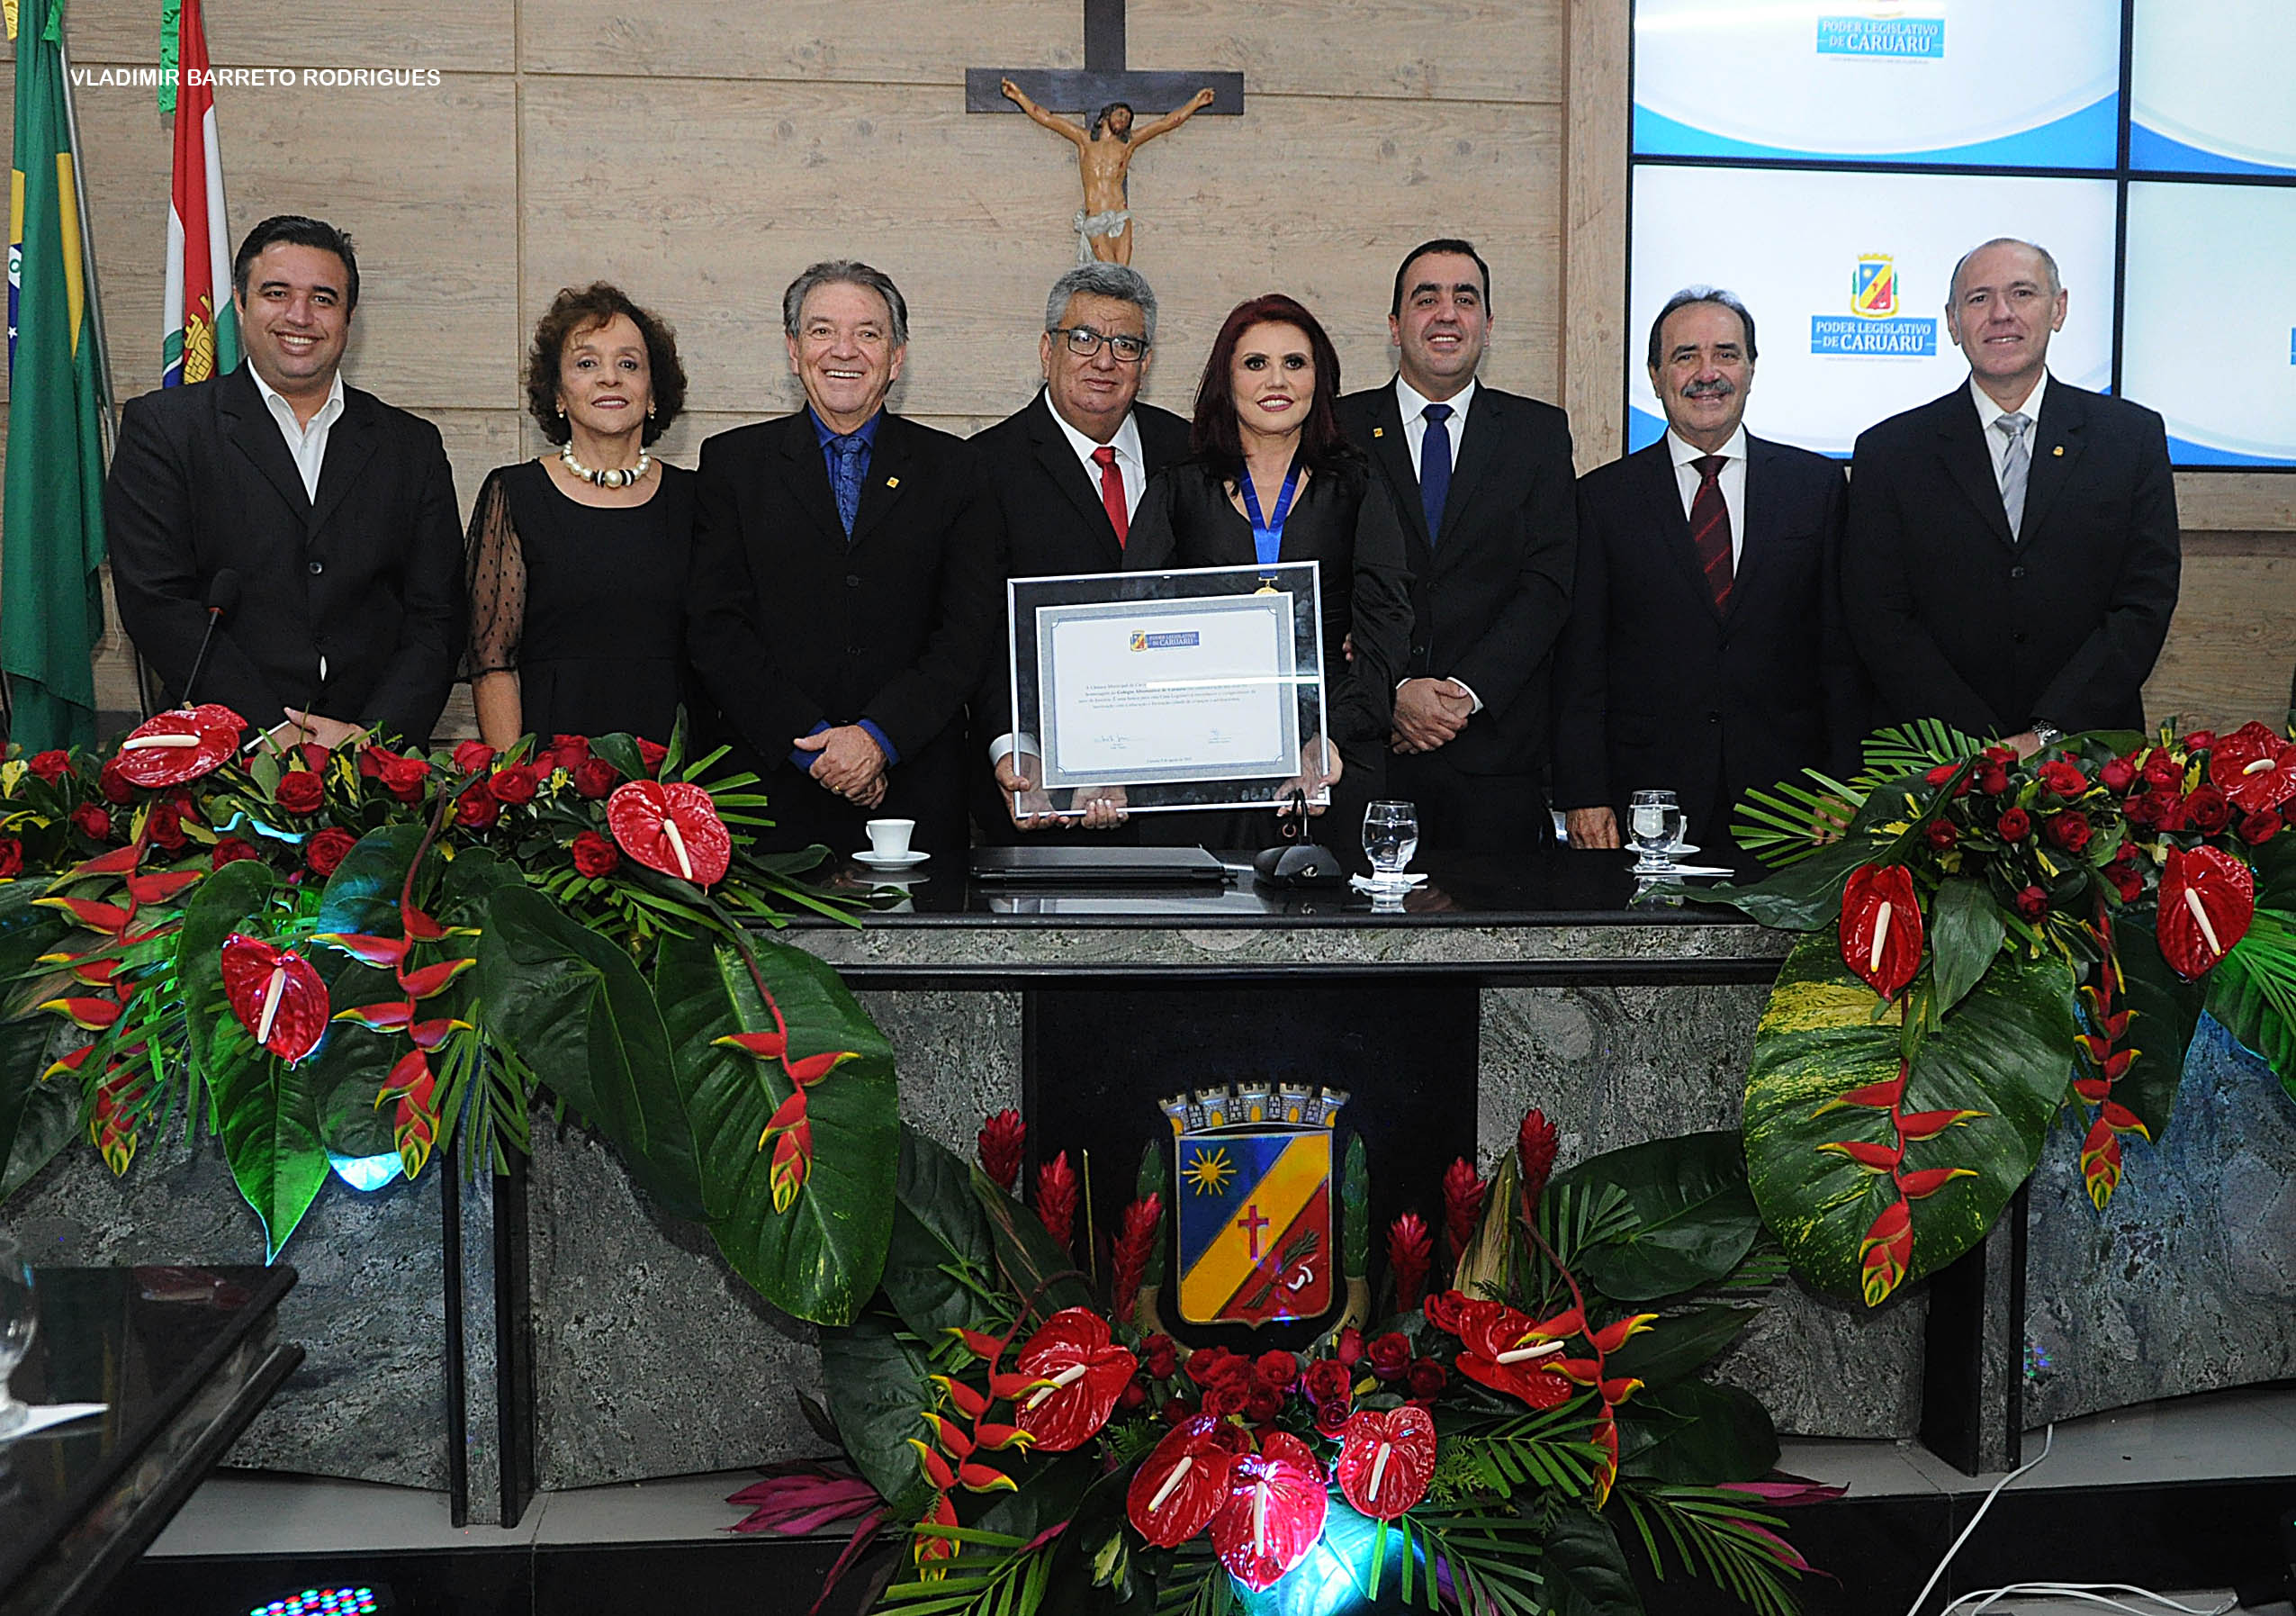 Colégio Alternativo celebra 35 anos e recebe homenagem na Câmara de Caruaru